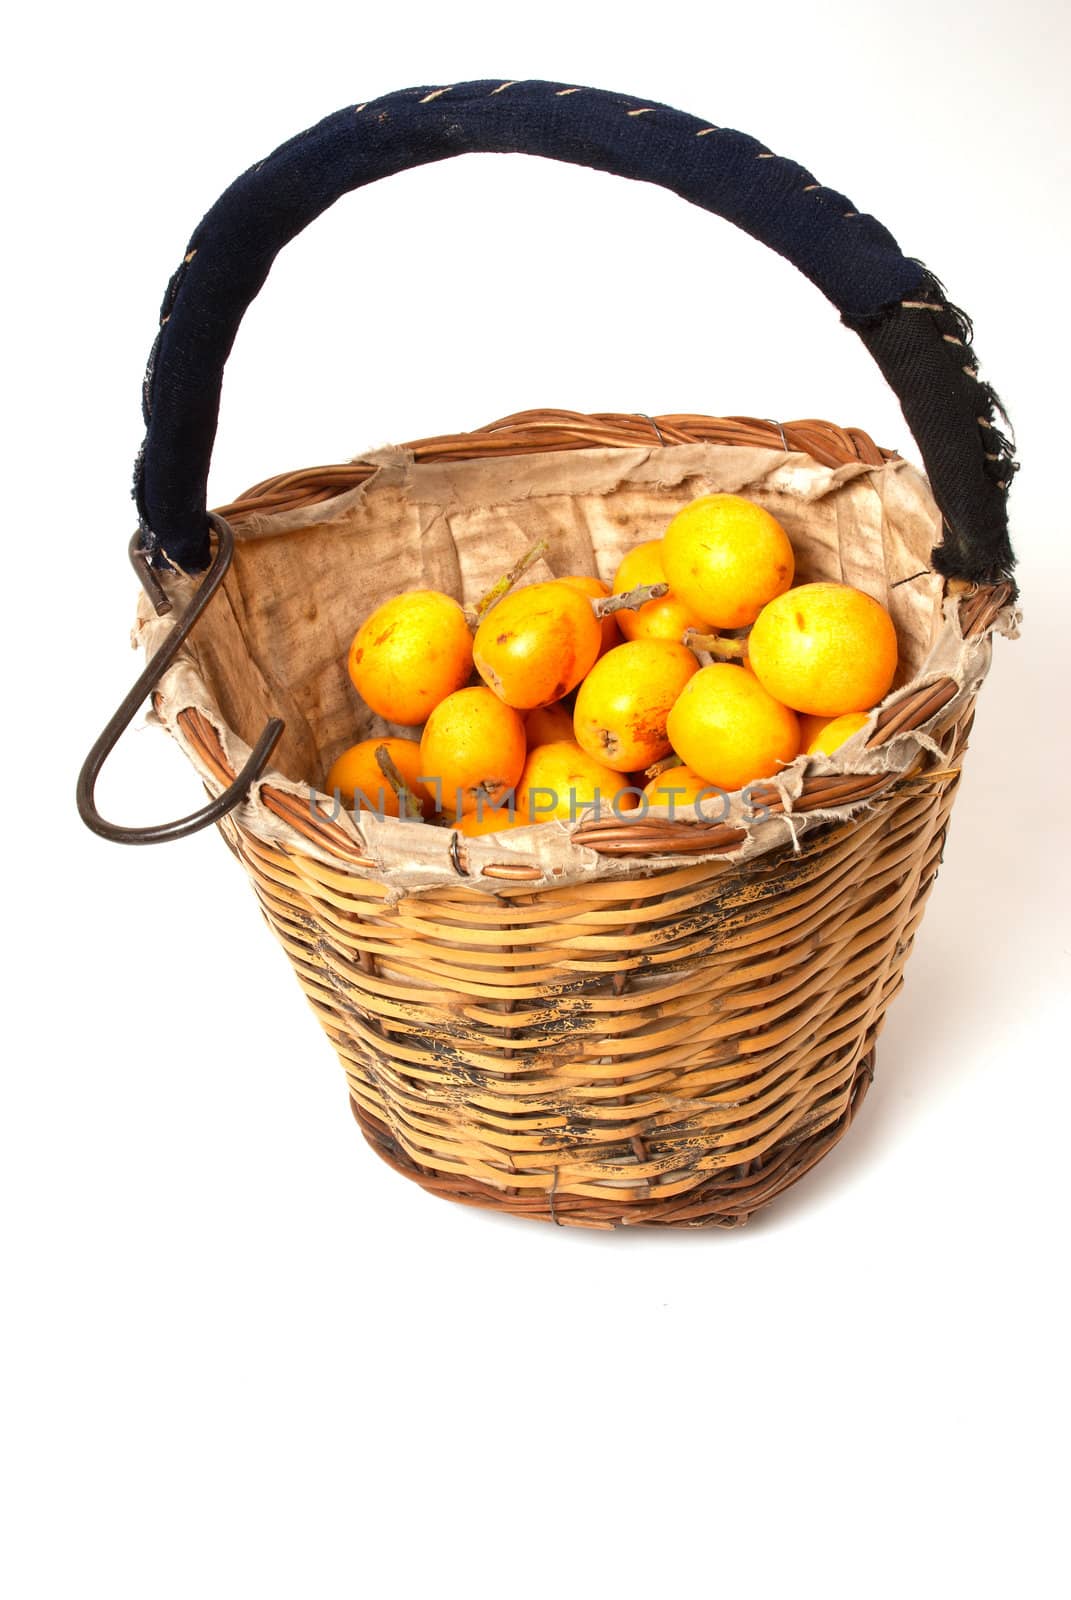 Loquat basket by hemeroskopion